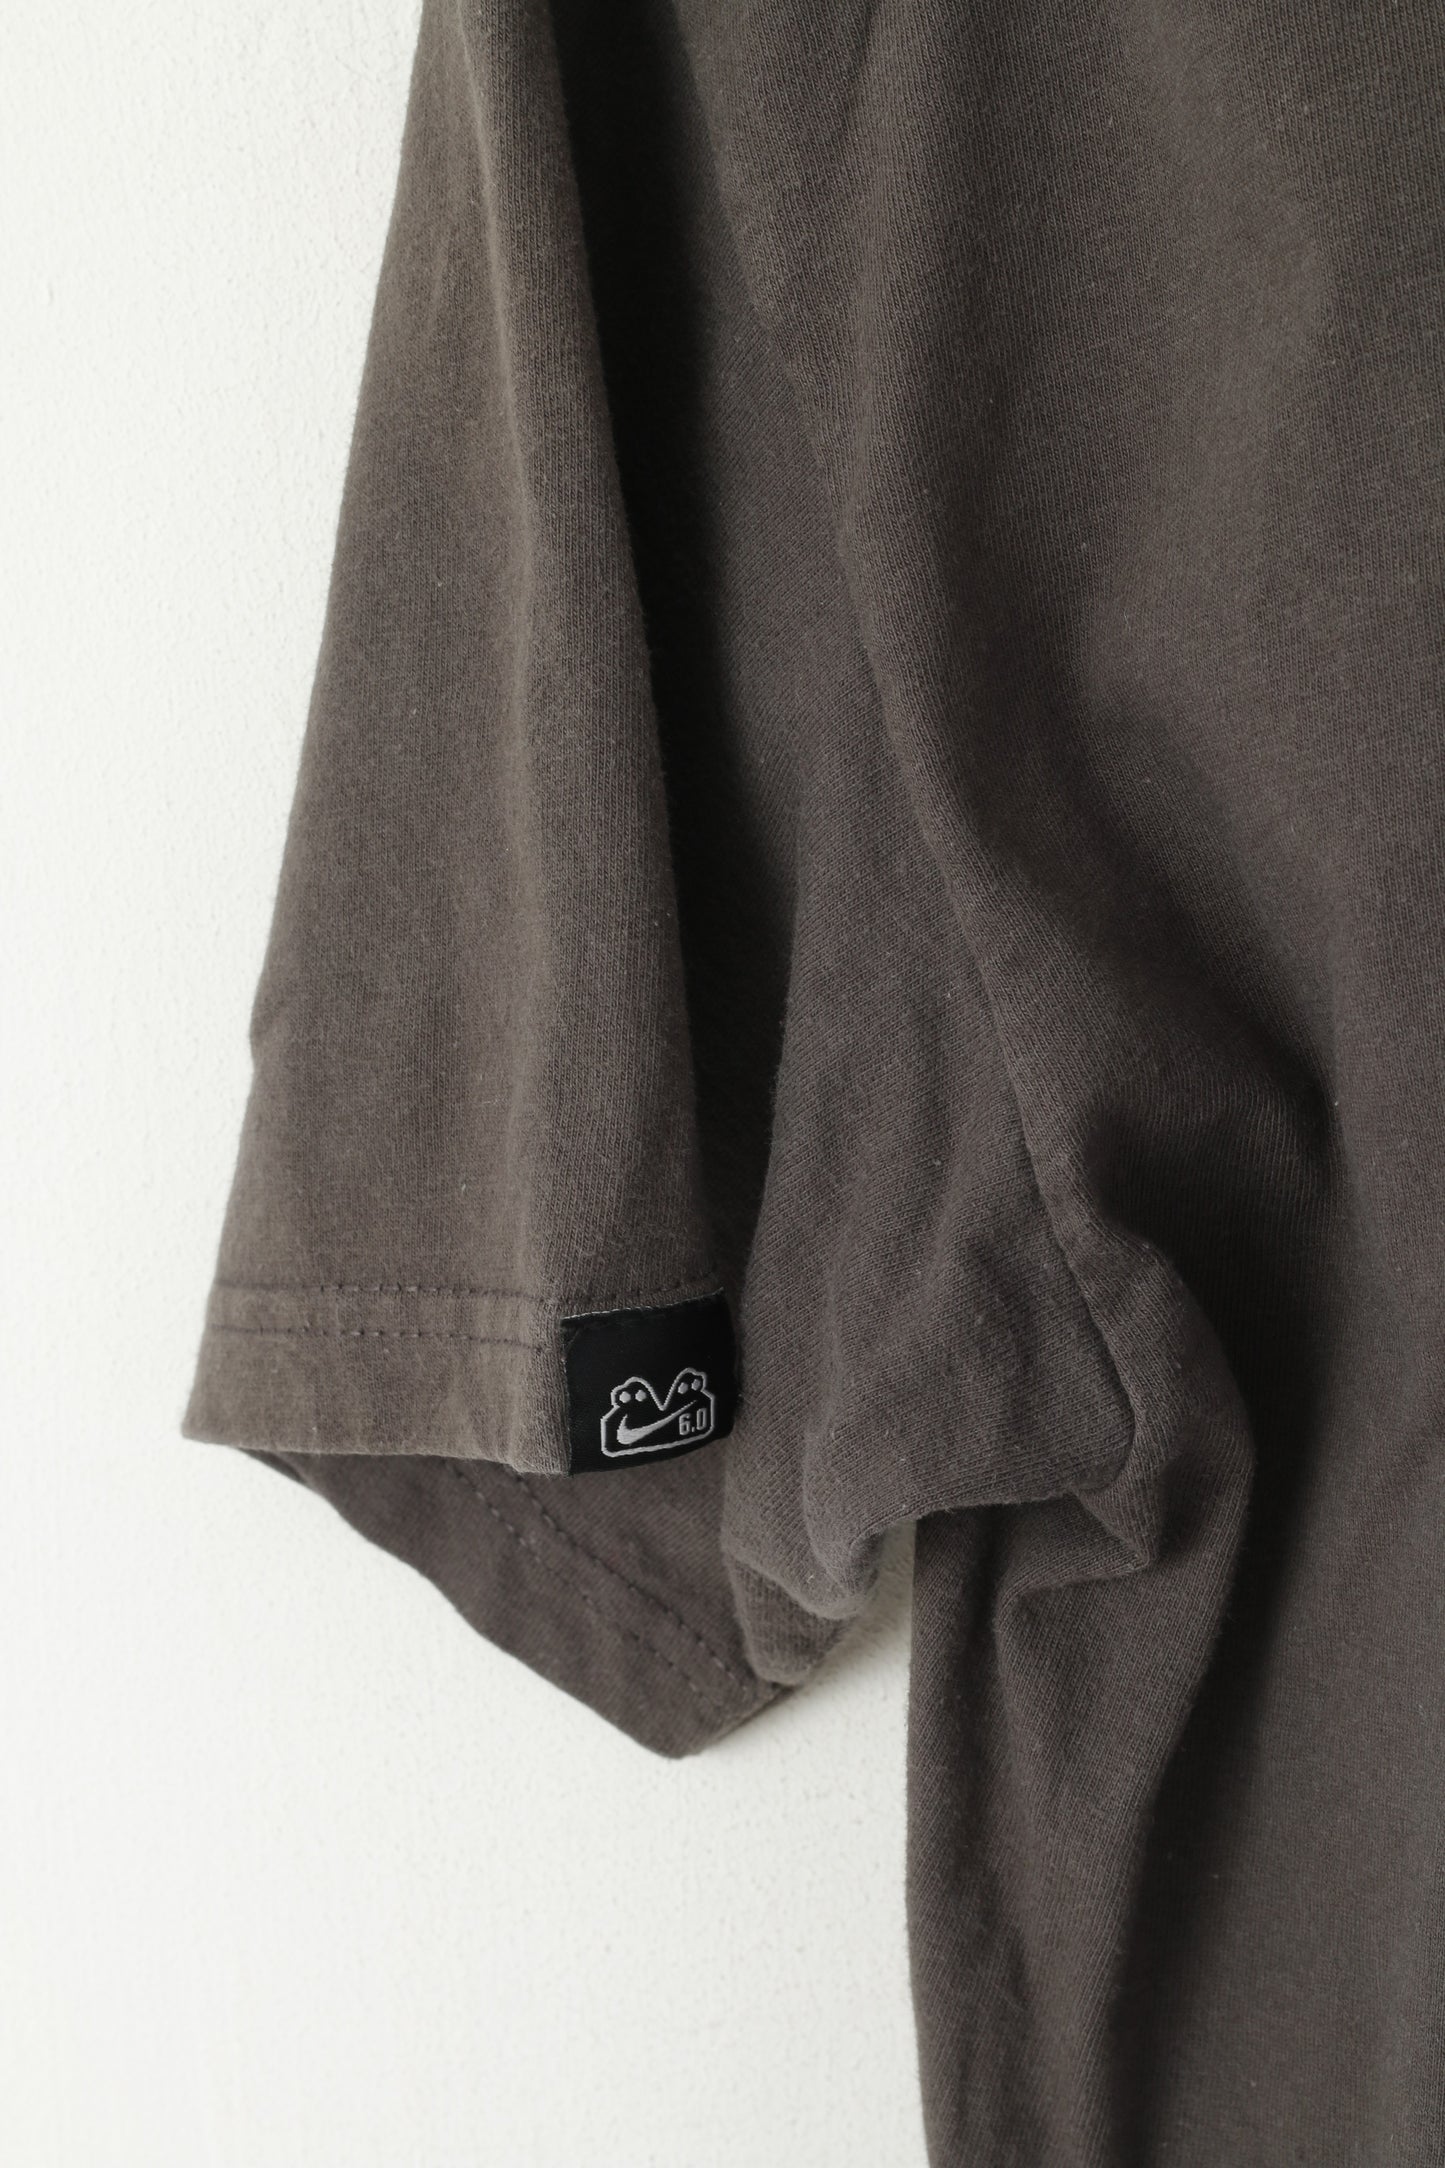 T-shirt Nike da uomo L, maglietta girocollo in cotone grigio con grafica 6.0 Sportswear